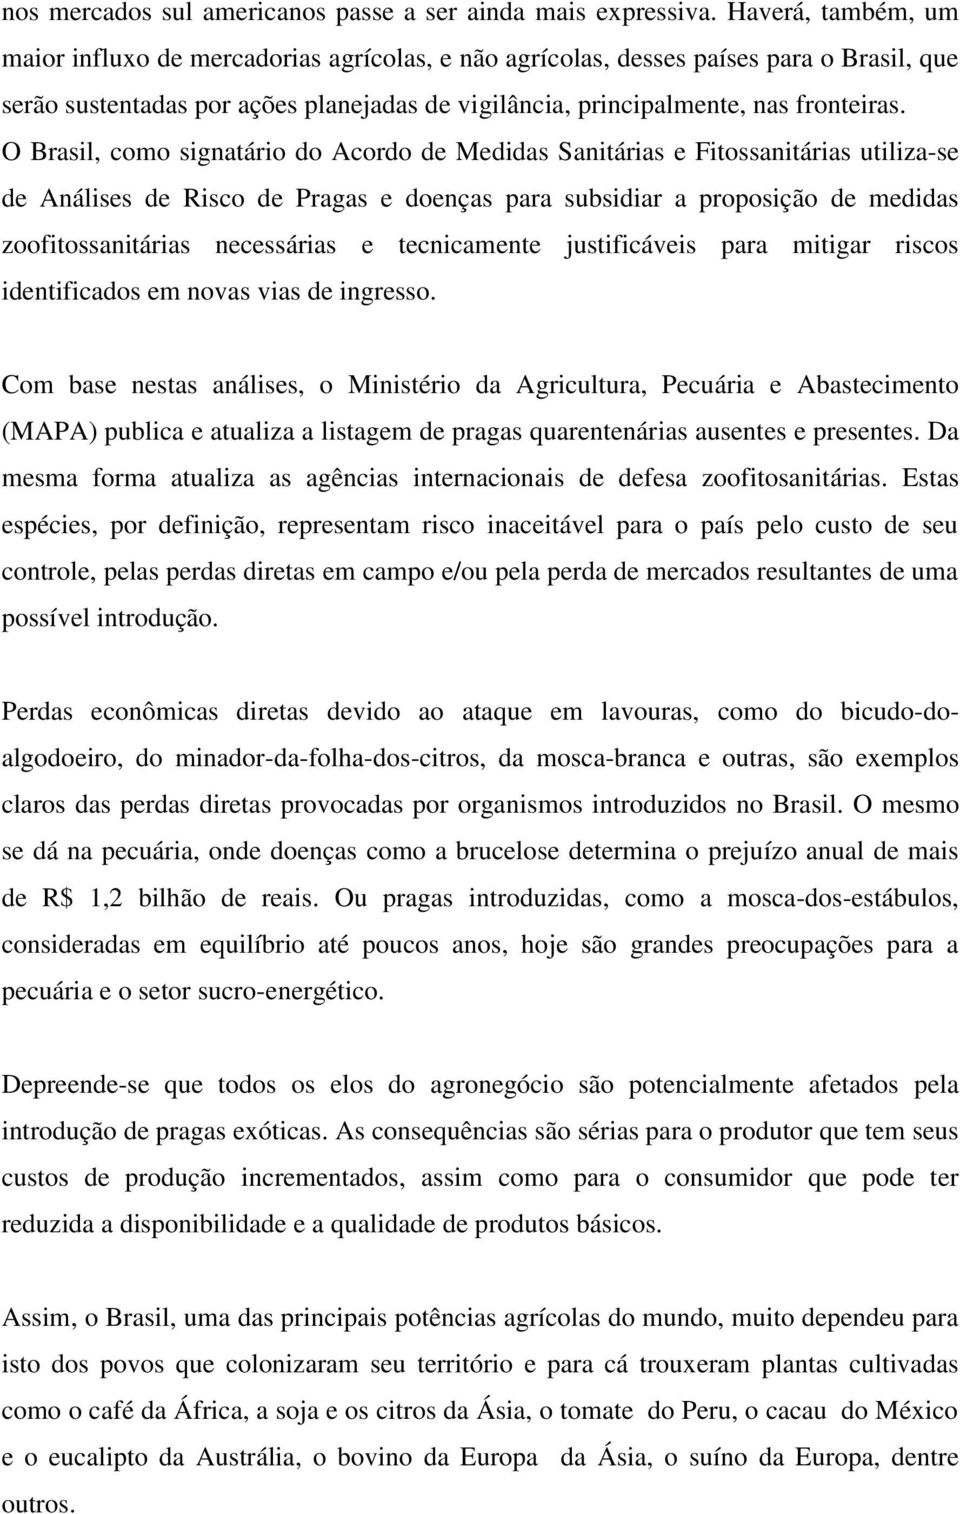 O Brasil, como signatário do Acordo de Medidas Sanitárias e Fitossanitárias utiliza-se de Análises de Risco de Pragas e doenças para subsidiar a proposição de medidas zoofitossanitárias necessárias e